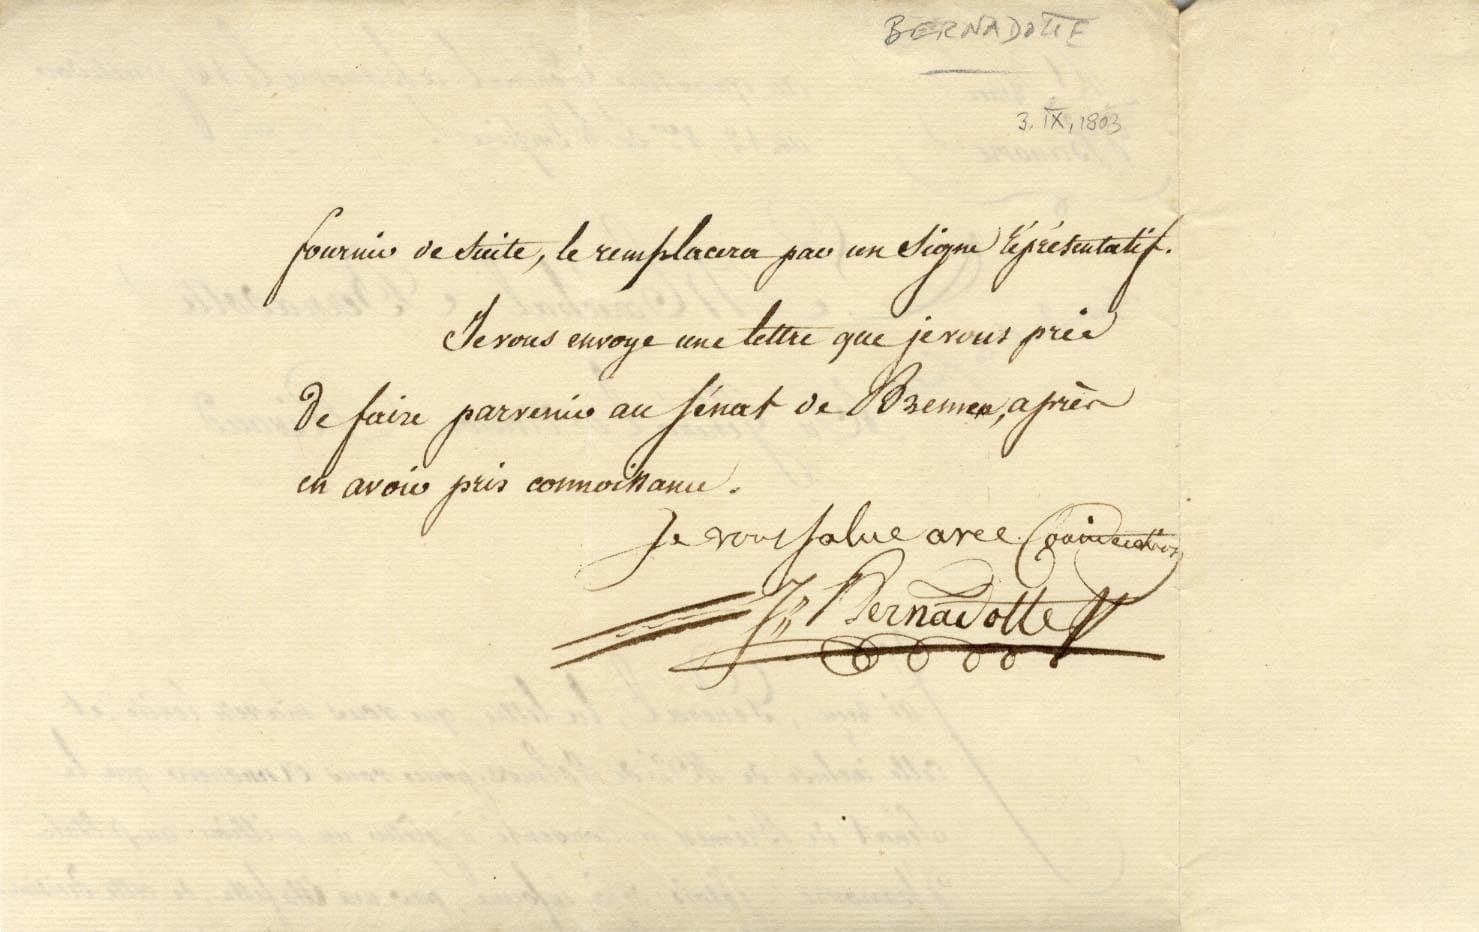 Jean Baptiste Bernadotte Autogramm